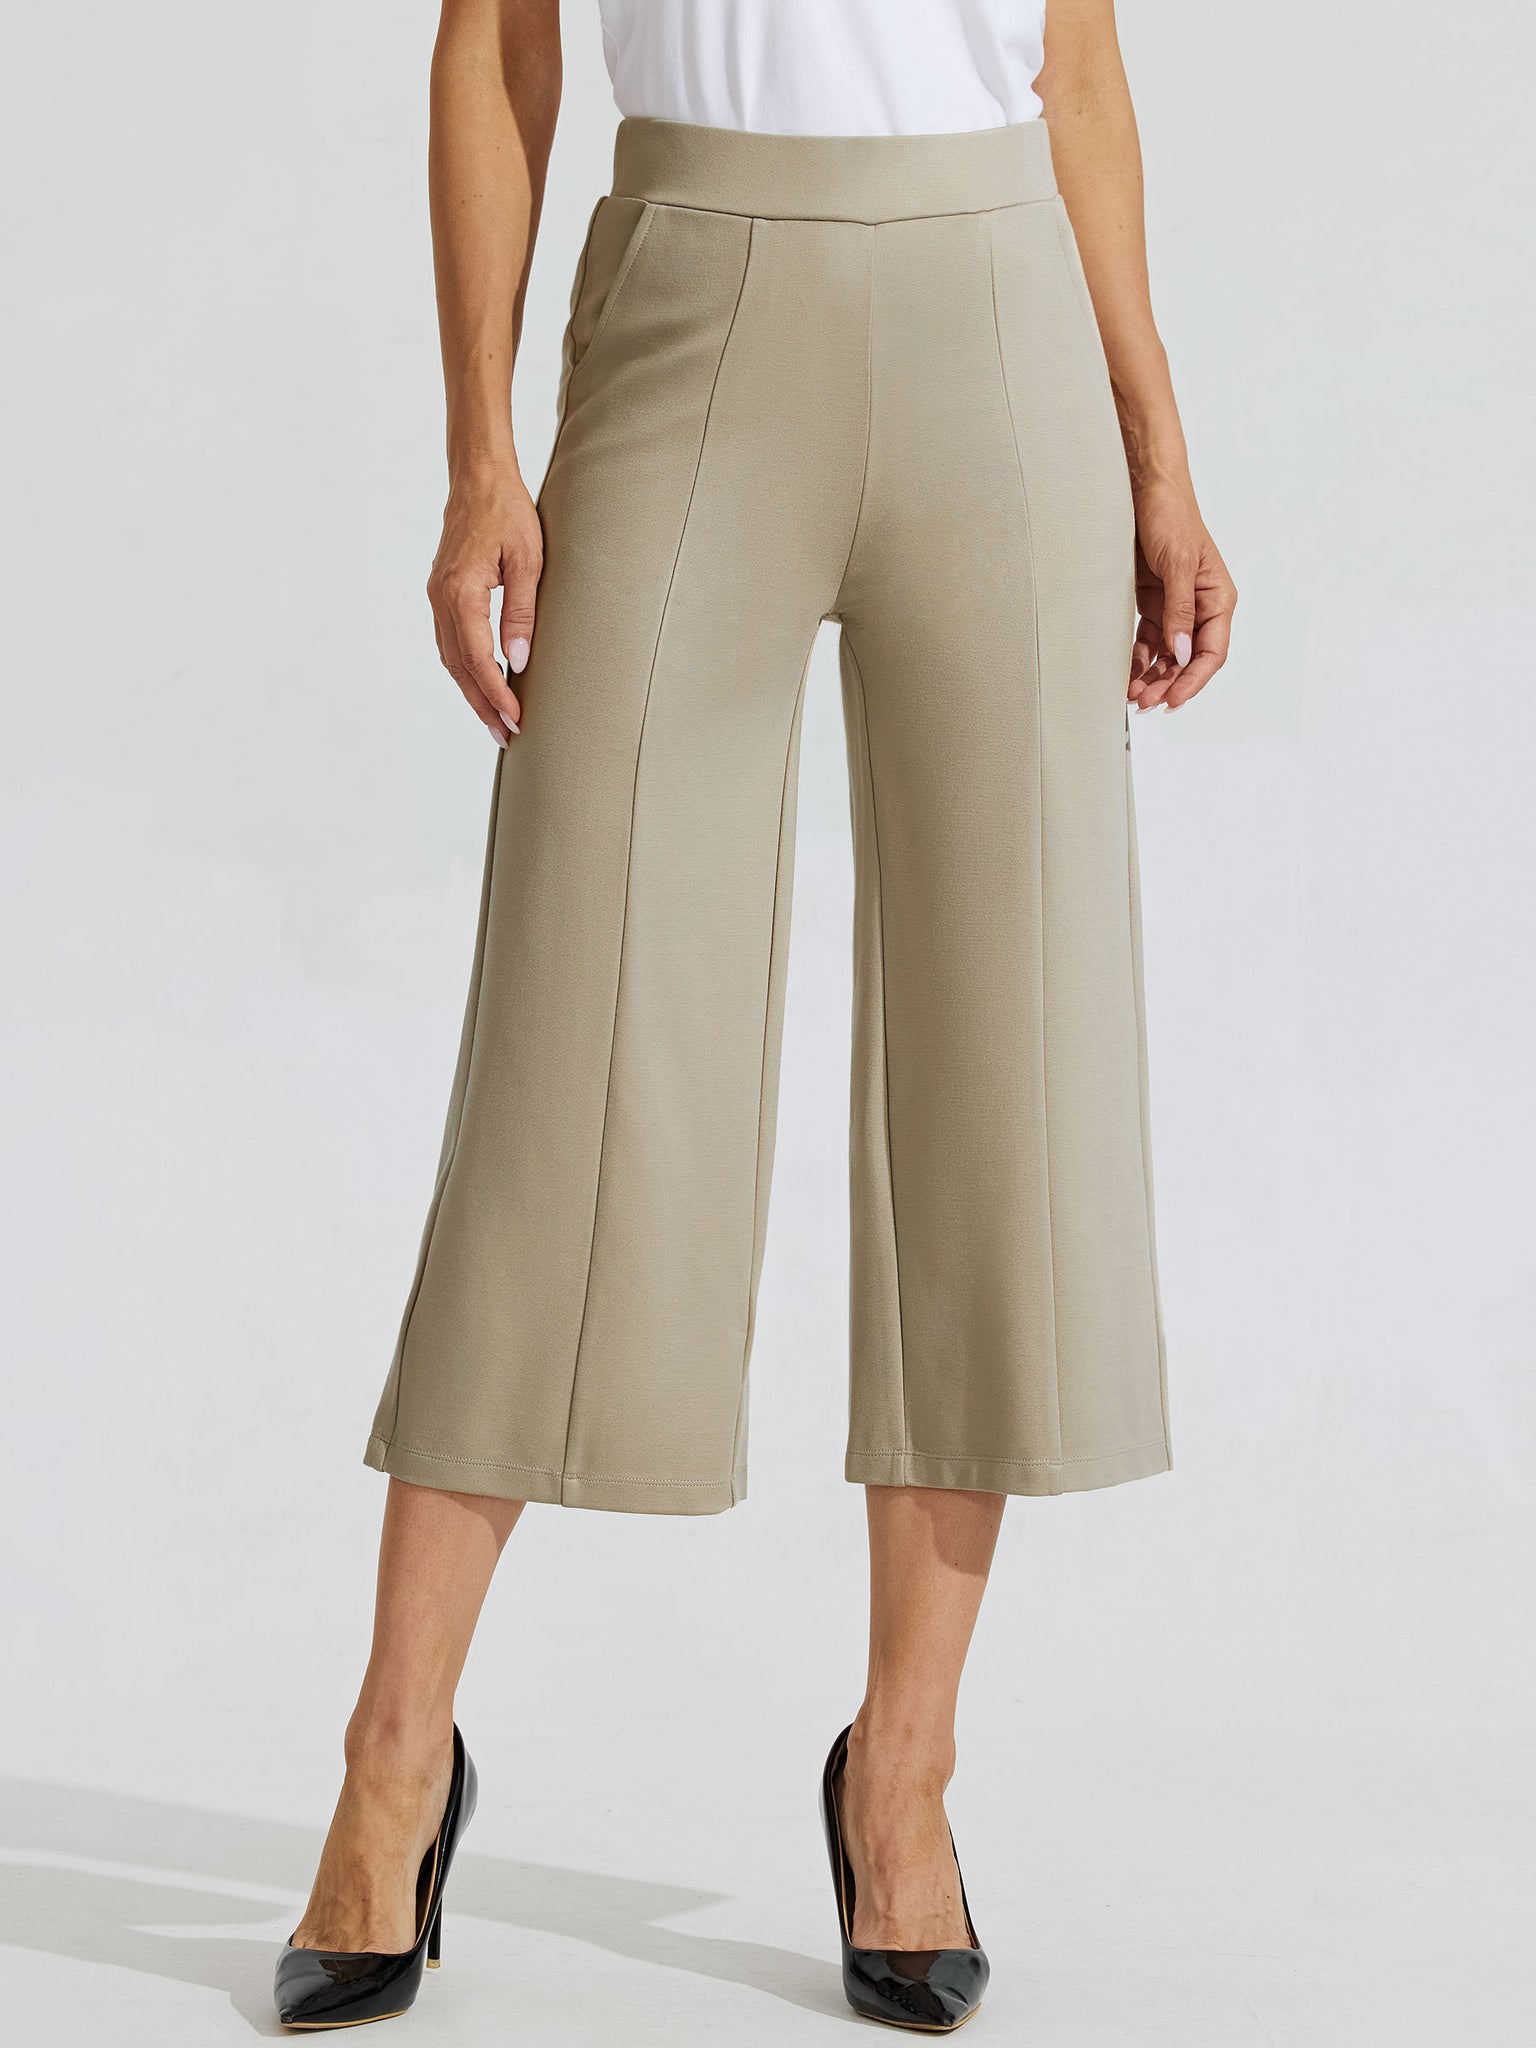 Women's Stretch Capri Wide-Leg Dress Pants_Khaki_model1